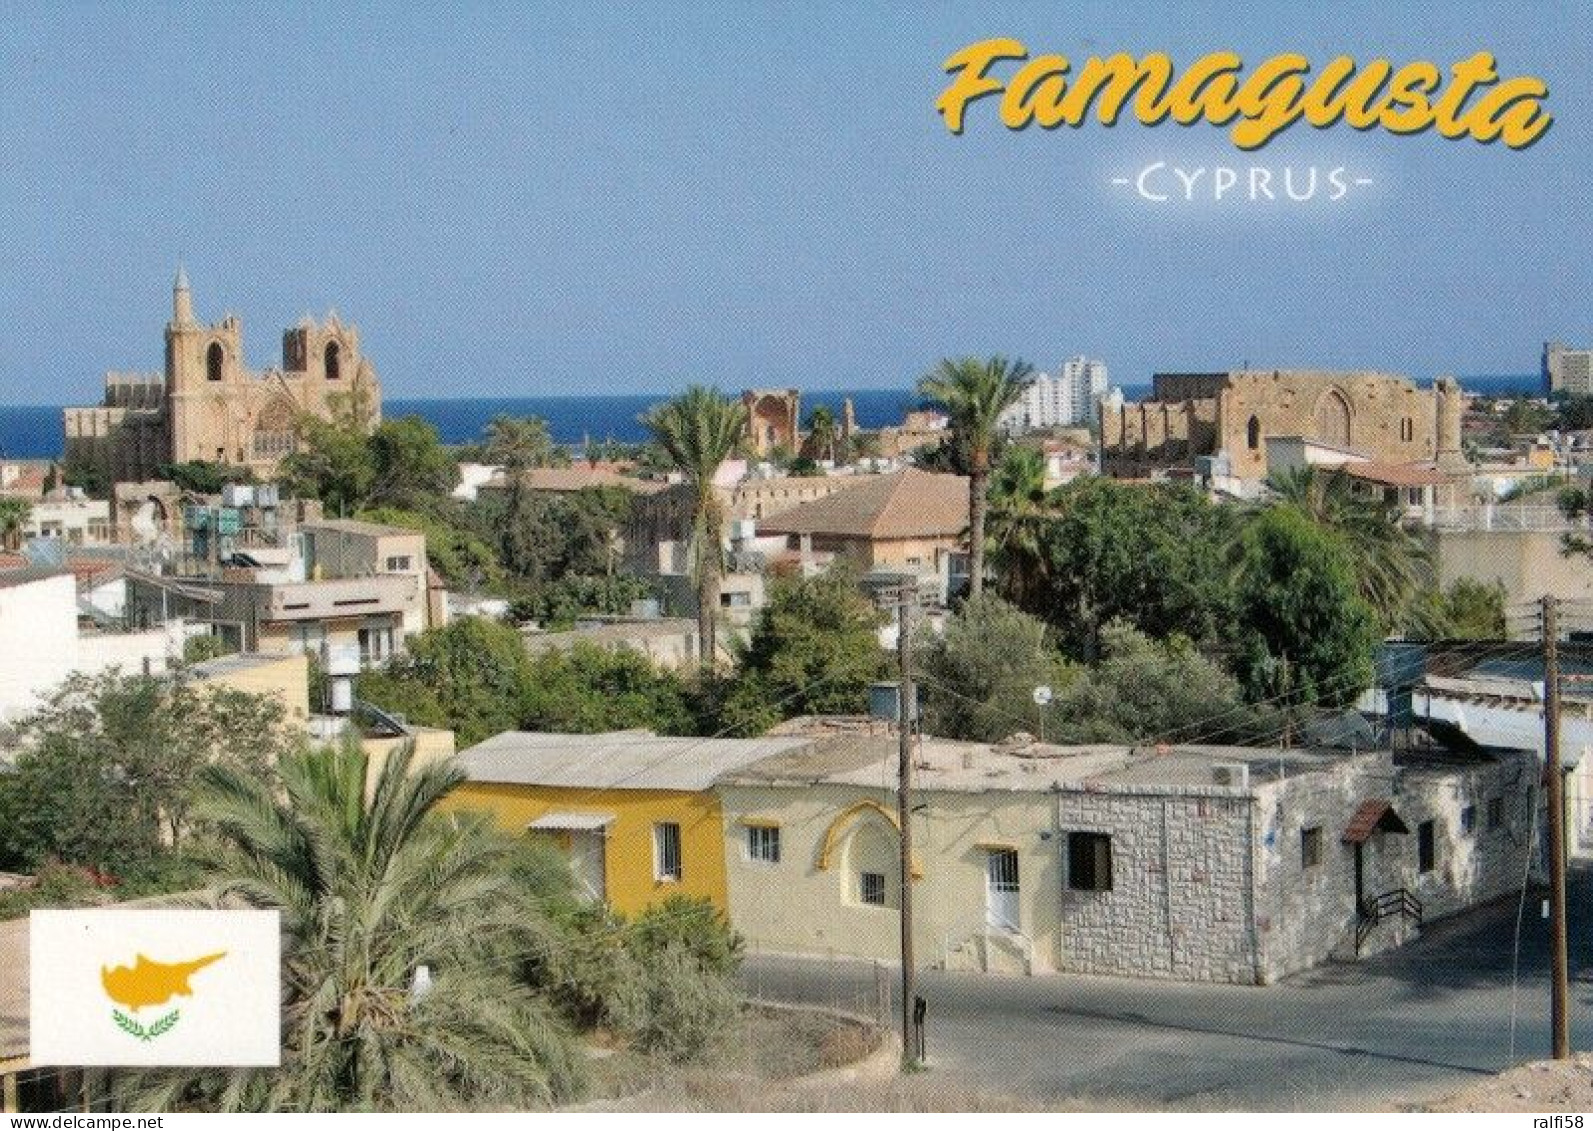 1 AK Northern Cyprus / Türkische Republik Nordzypern * Blick Auf Die Stadt Famagusta - Luftbildansicht * - Cyprus